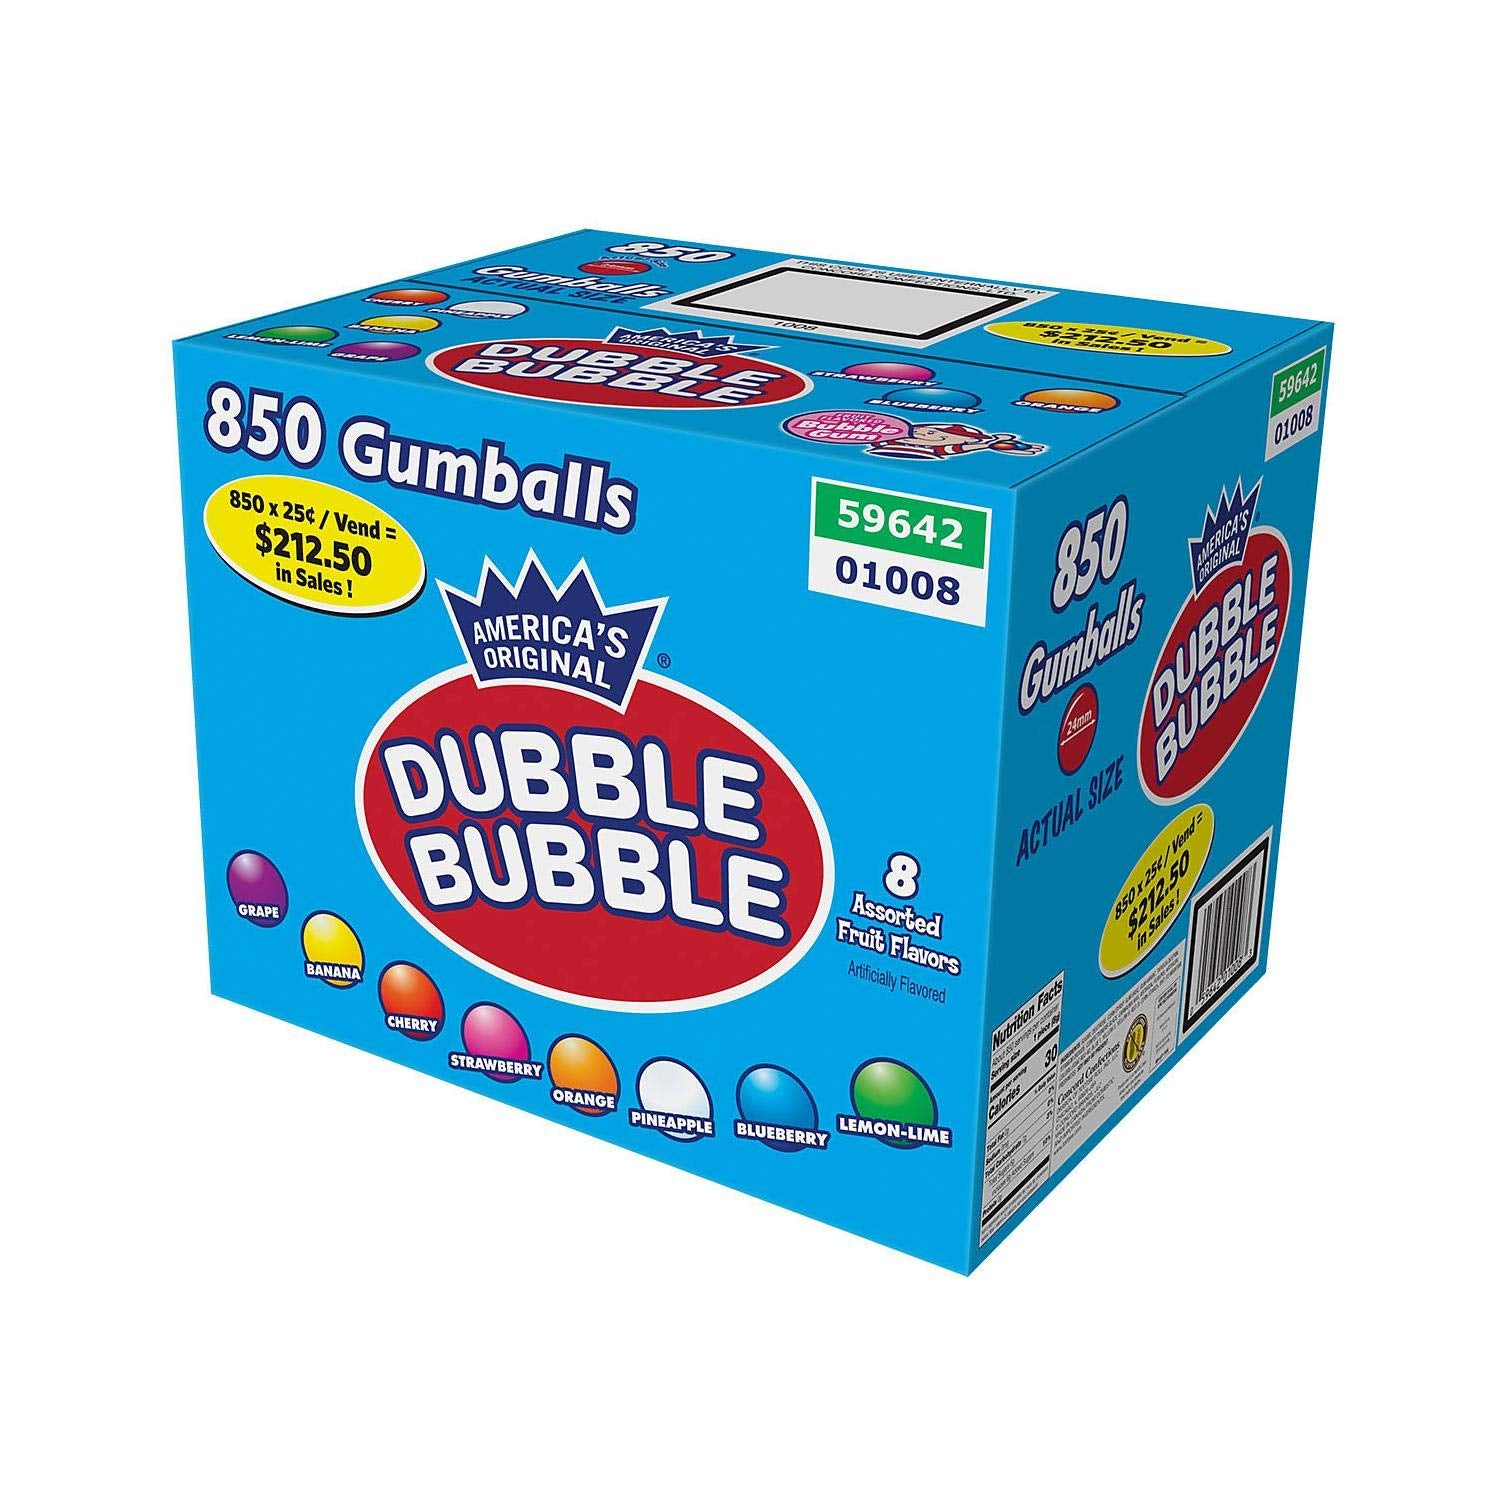 Dubble Bubble gumballs 850 ct box